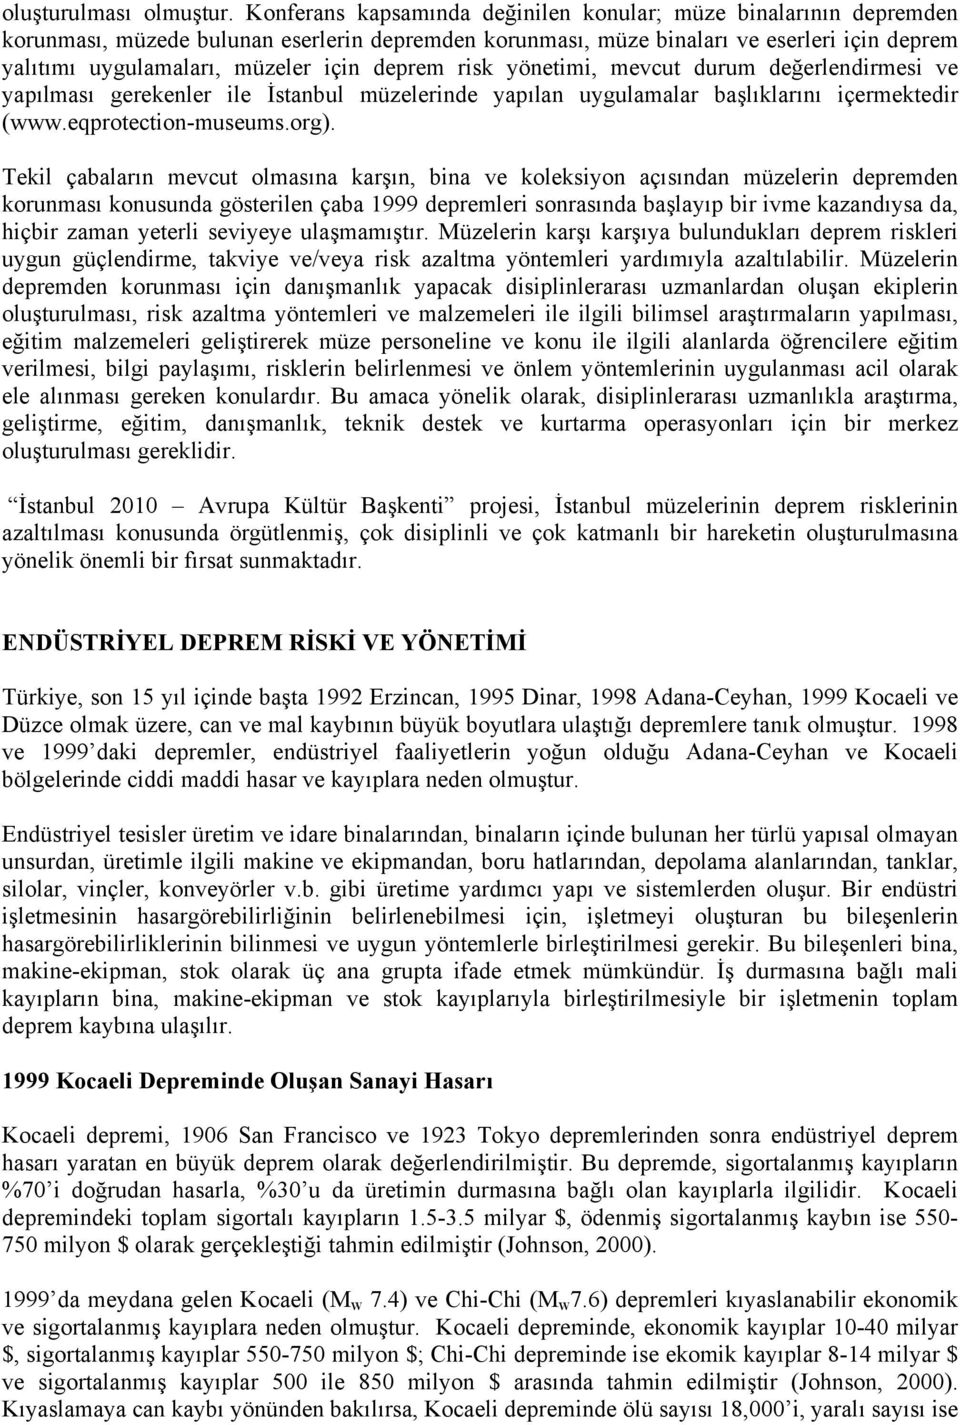 deprem risk yönetimi, mevcut durum değerlendirmesi ve yapılması gerekenler ile İstanbul müzelerinde yapılan uygulamalar başlıklarını içermektedir (www.eqprotection-museums.org).